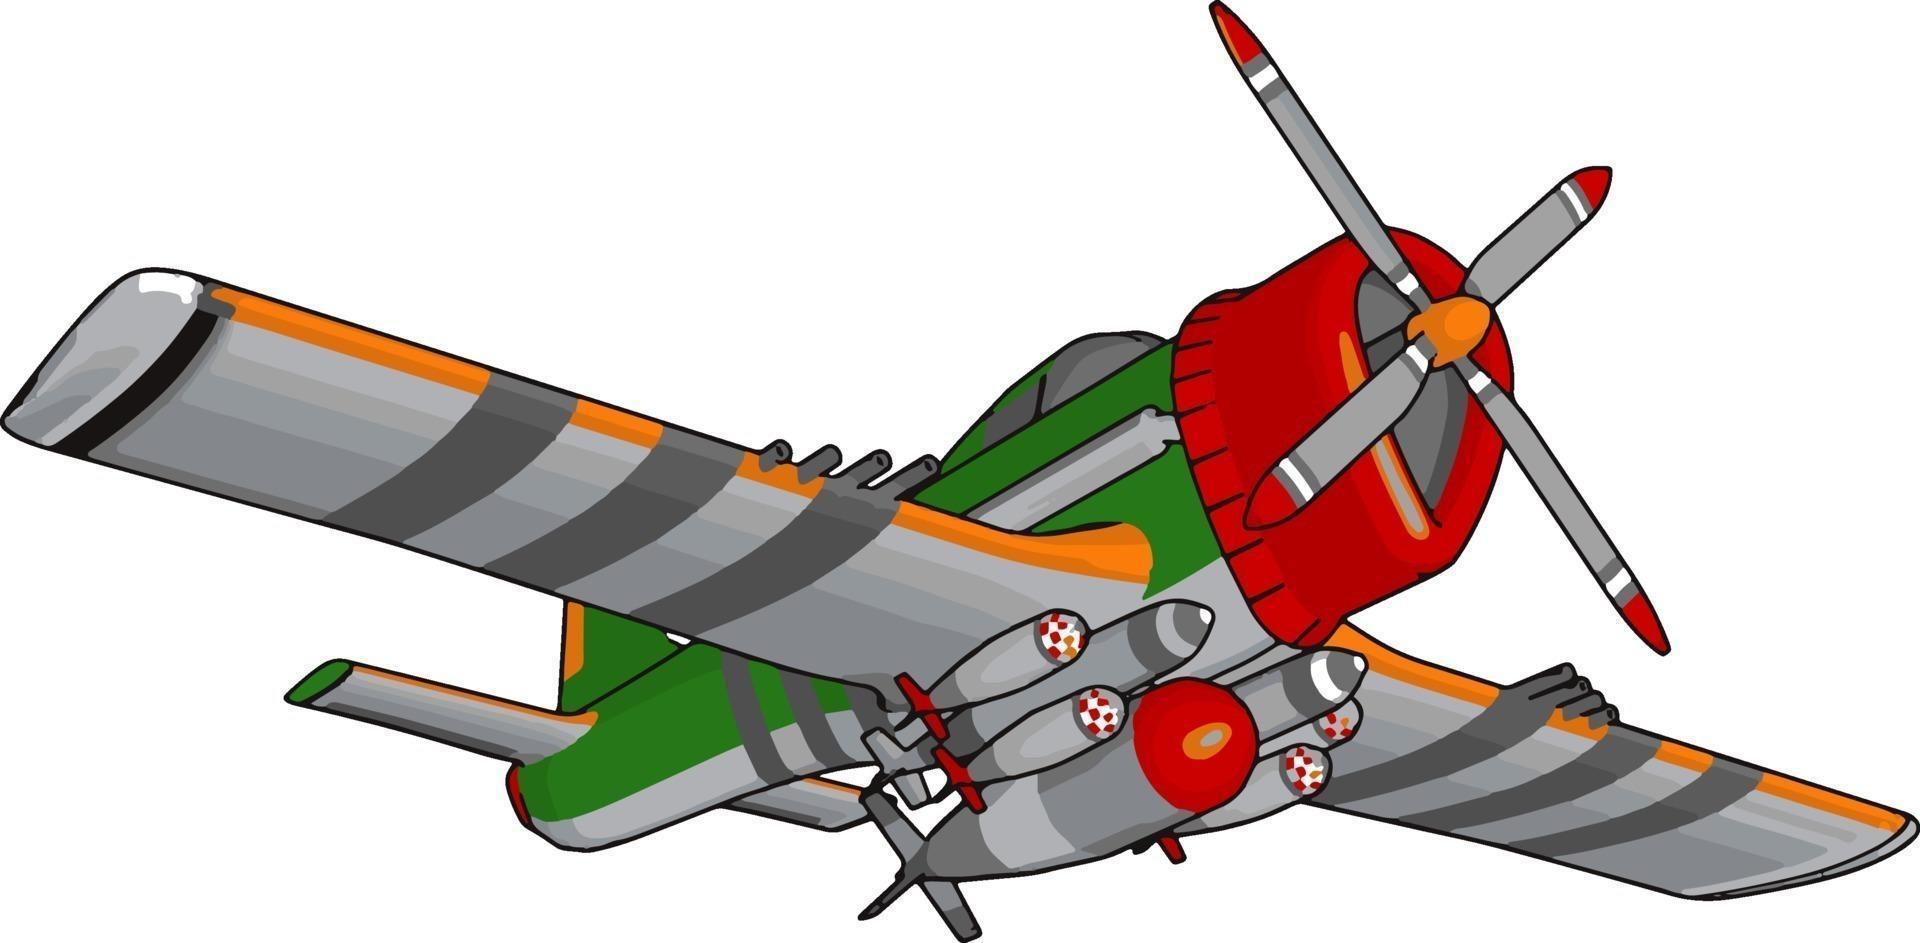 Retro bomber, illustration, vector on white background.